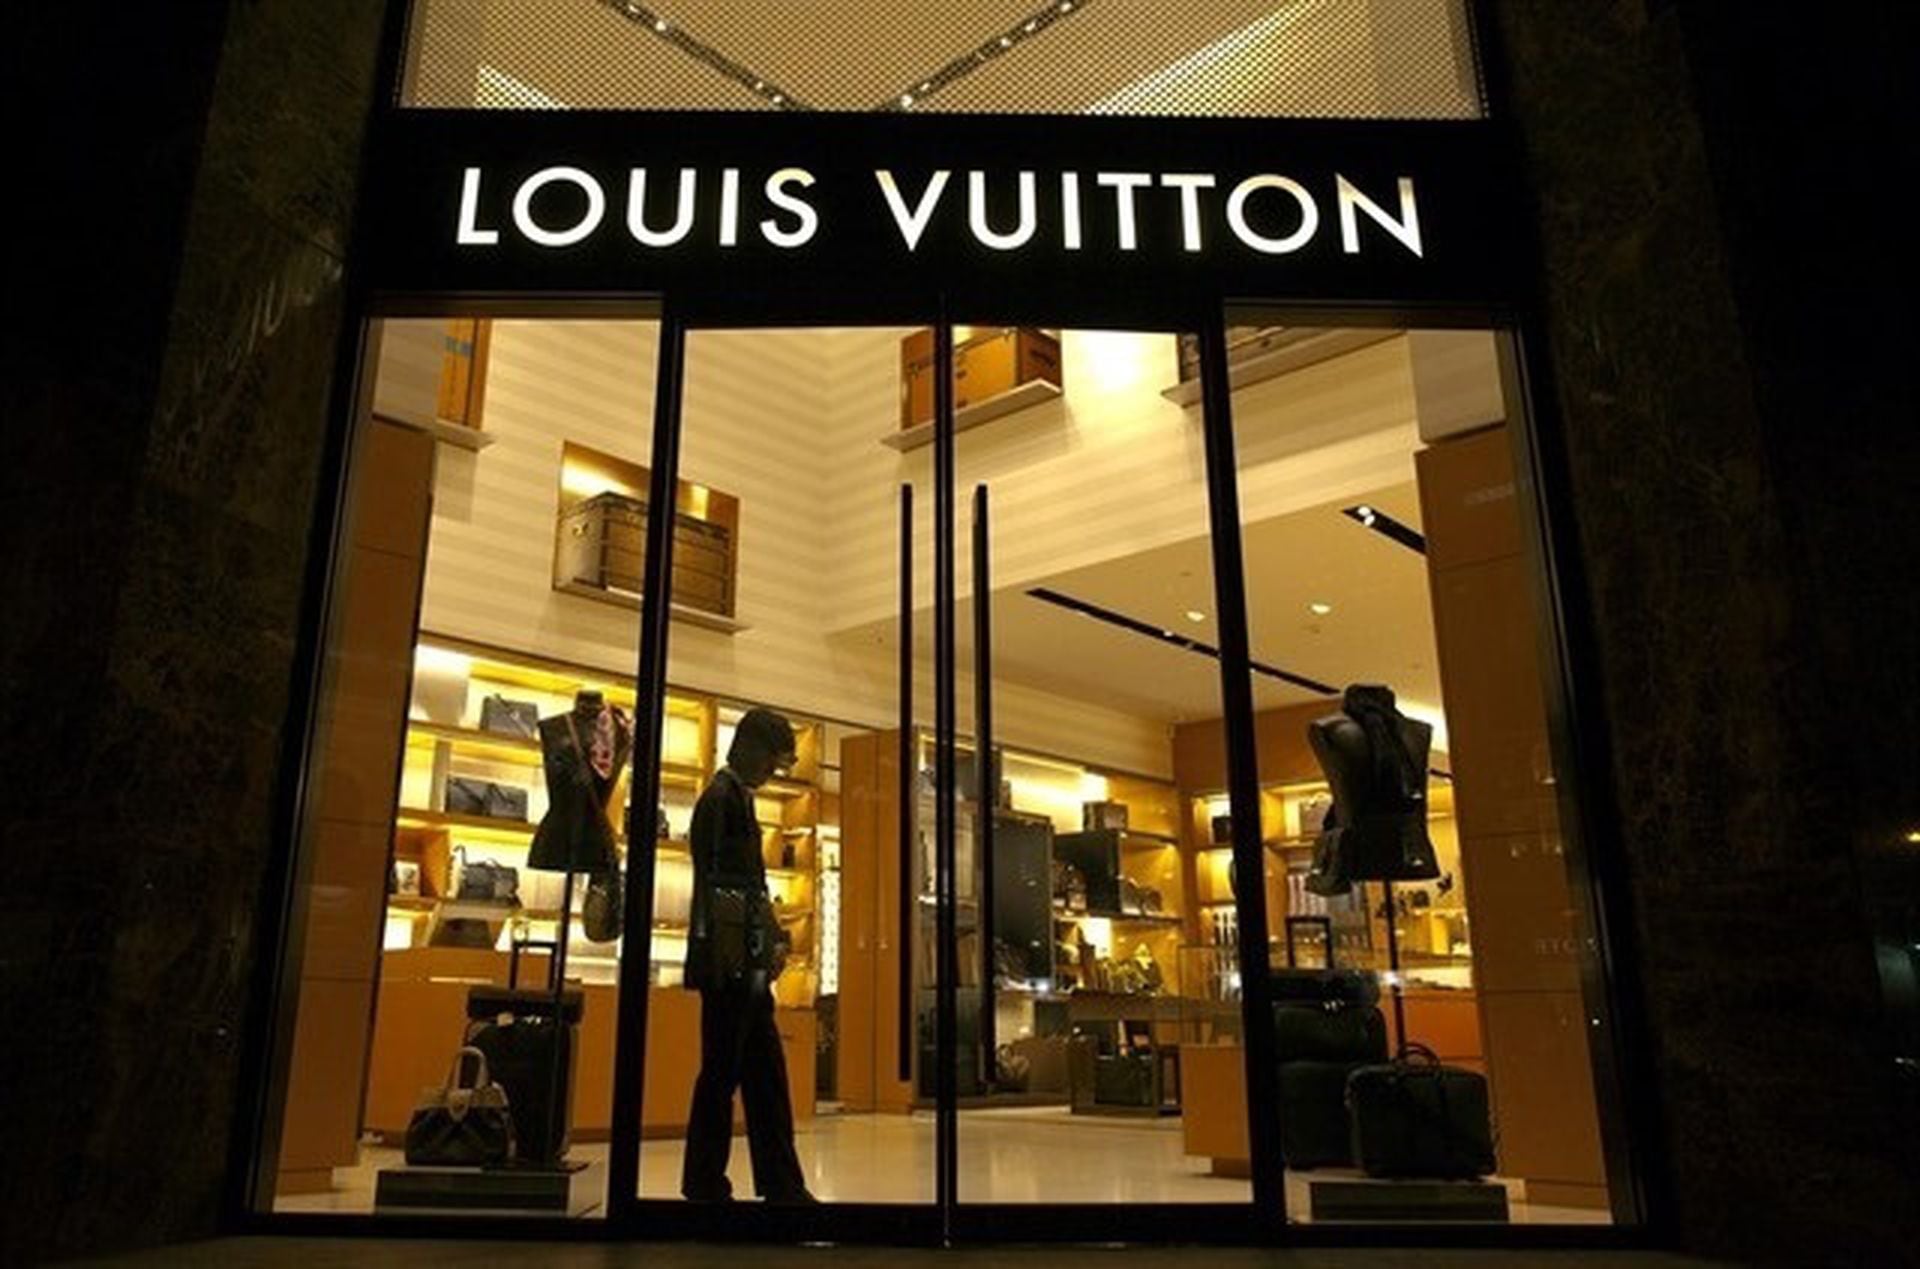  Louis Vuitton, el nacimiento del lujo moderno